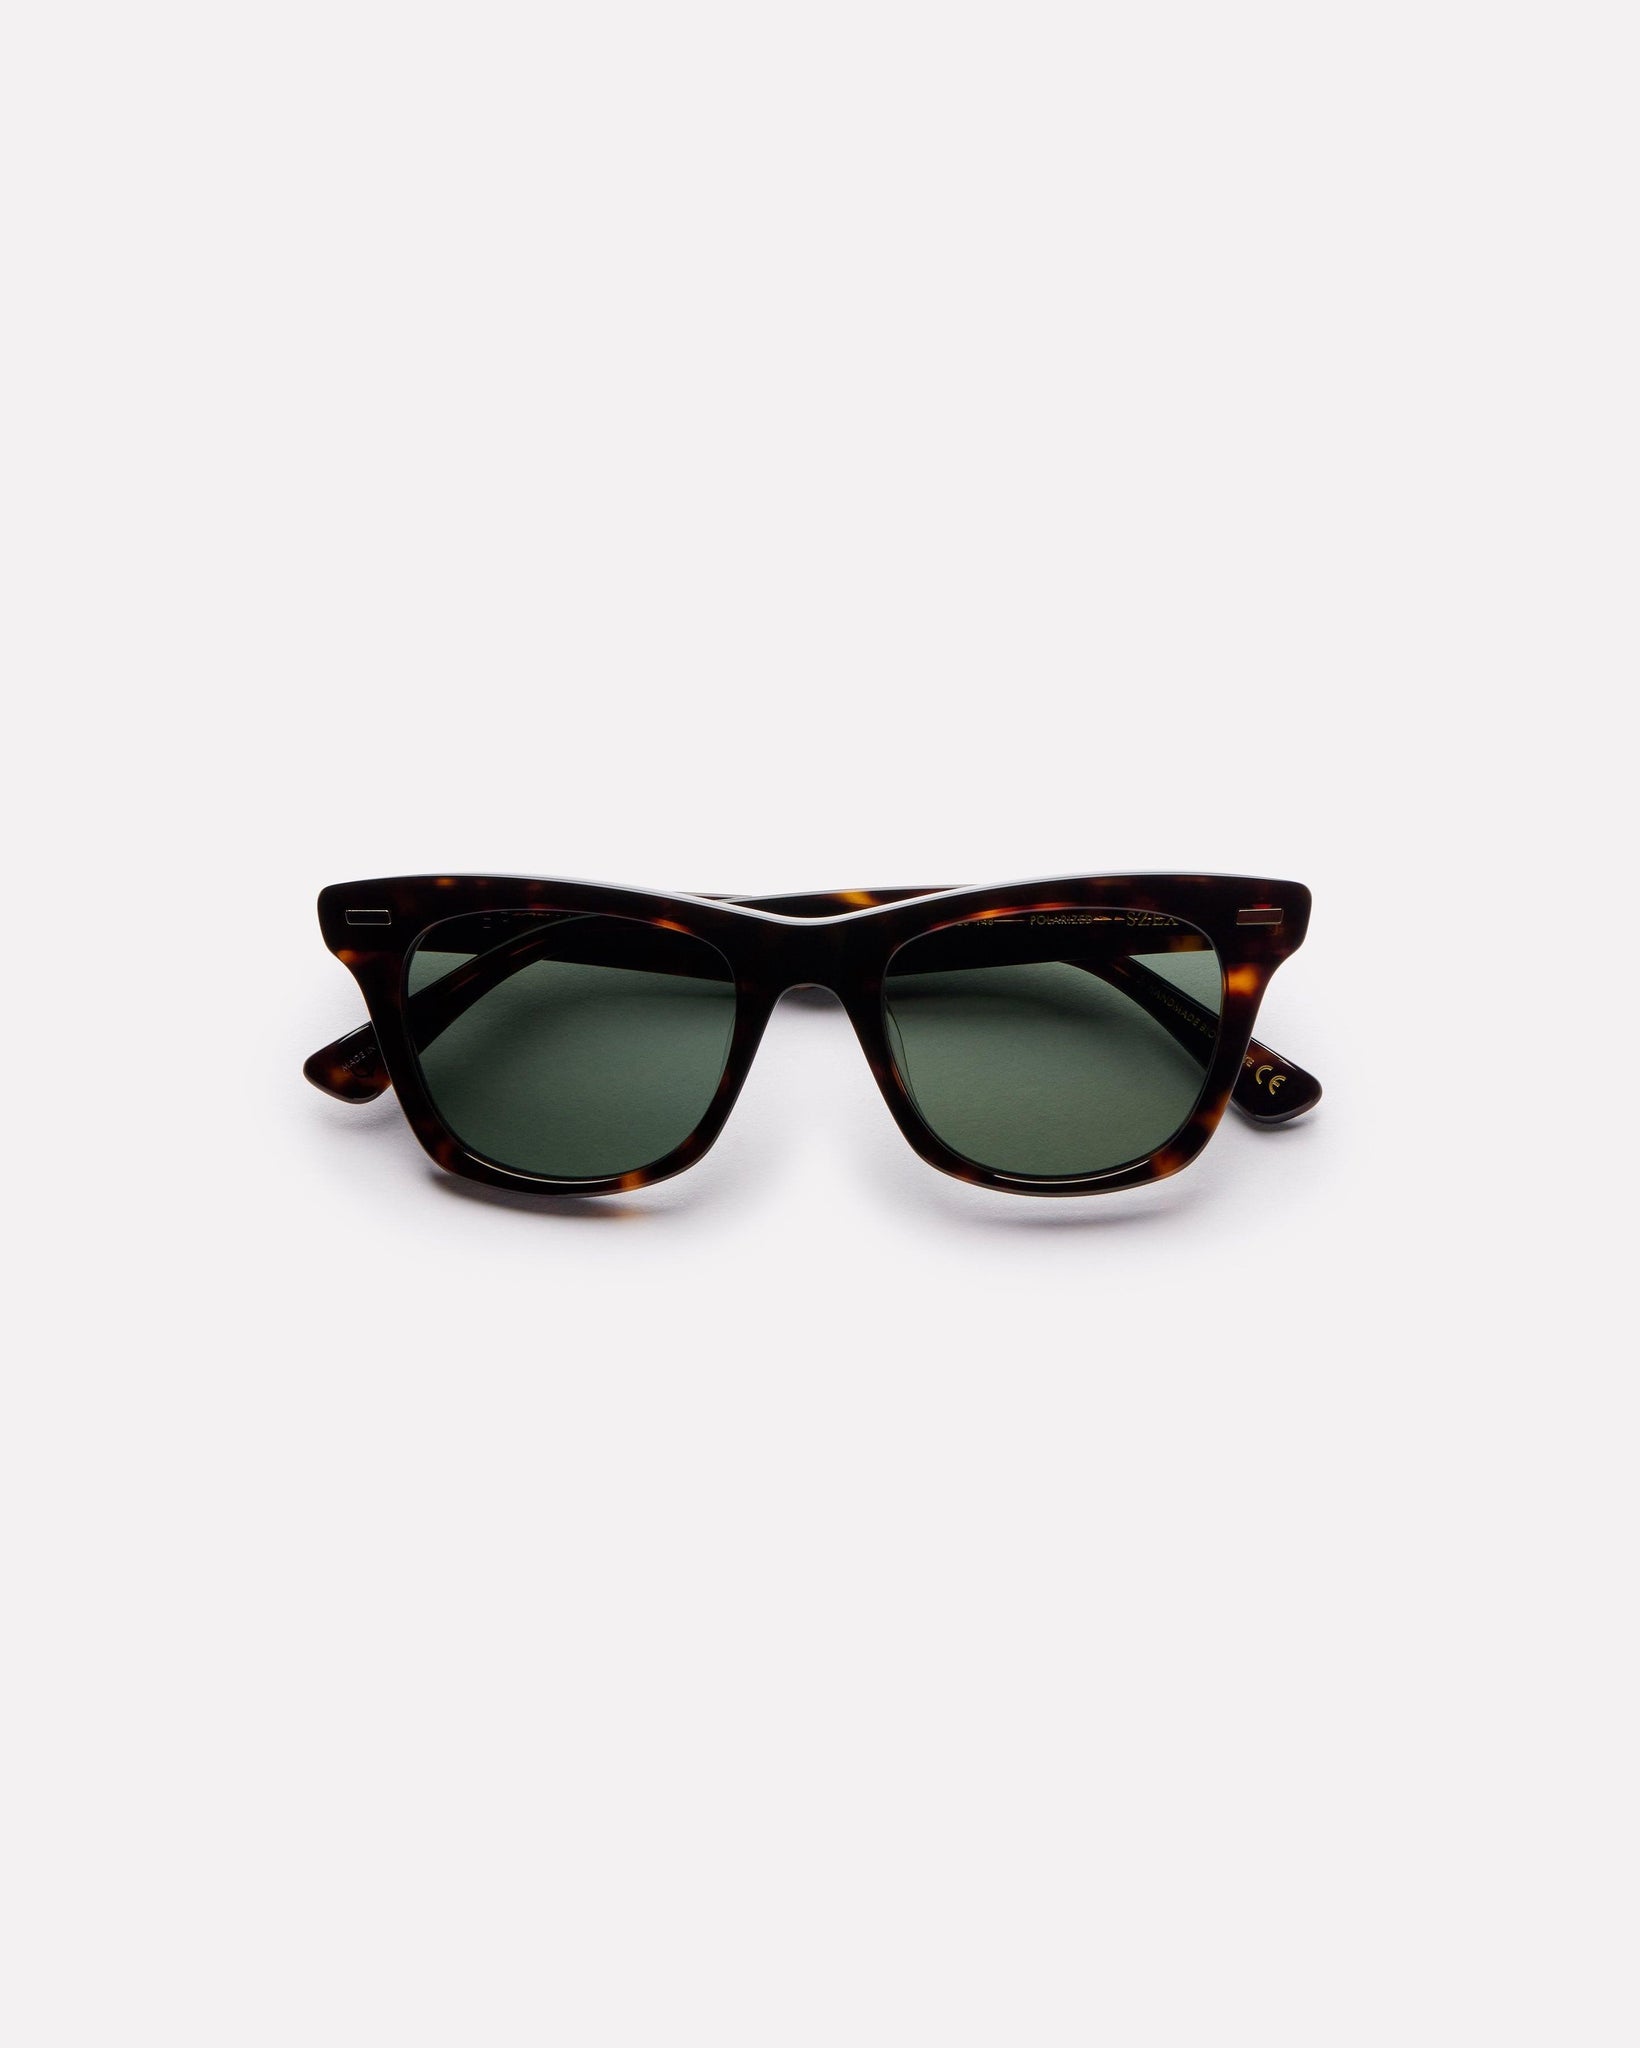 SZEX - Tortoise Polished / Green Polarized - Sunglasses - EPOKHE EYEWEAR